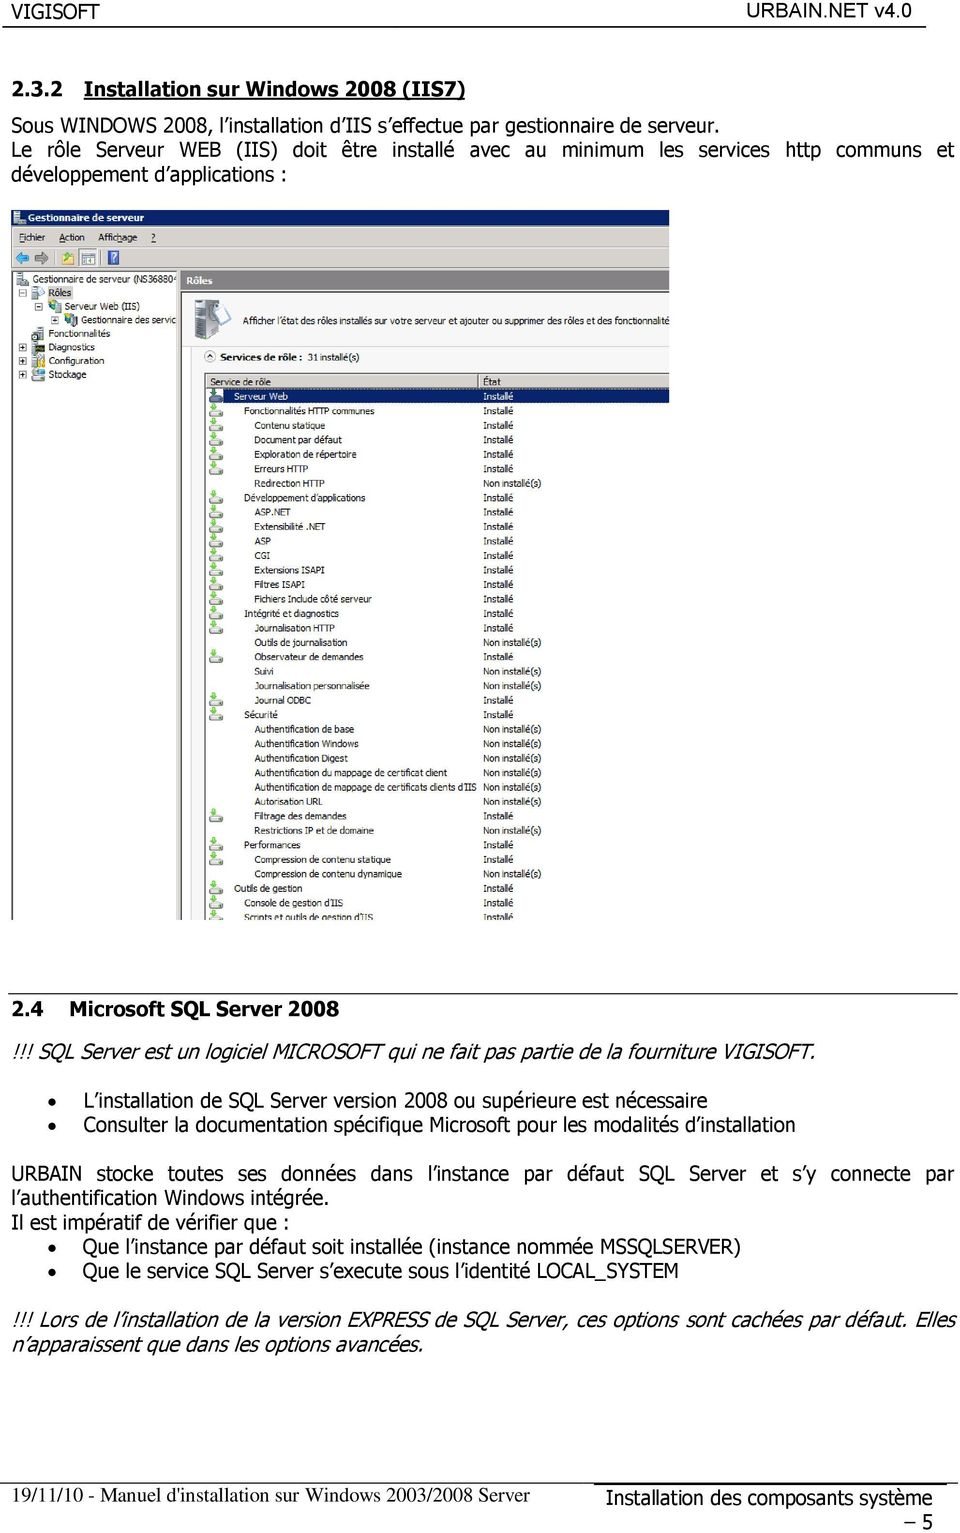 !! SQL Server est un logiciel MICROSOFT qui ne fait pas partie de la fourniture VIGISOFT.